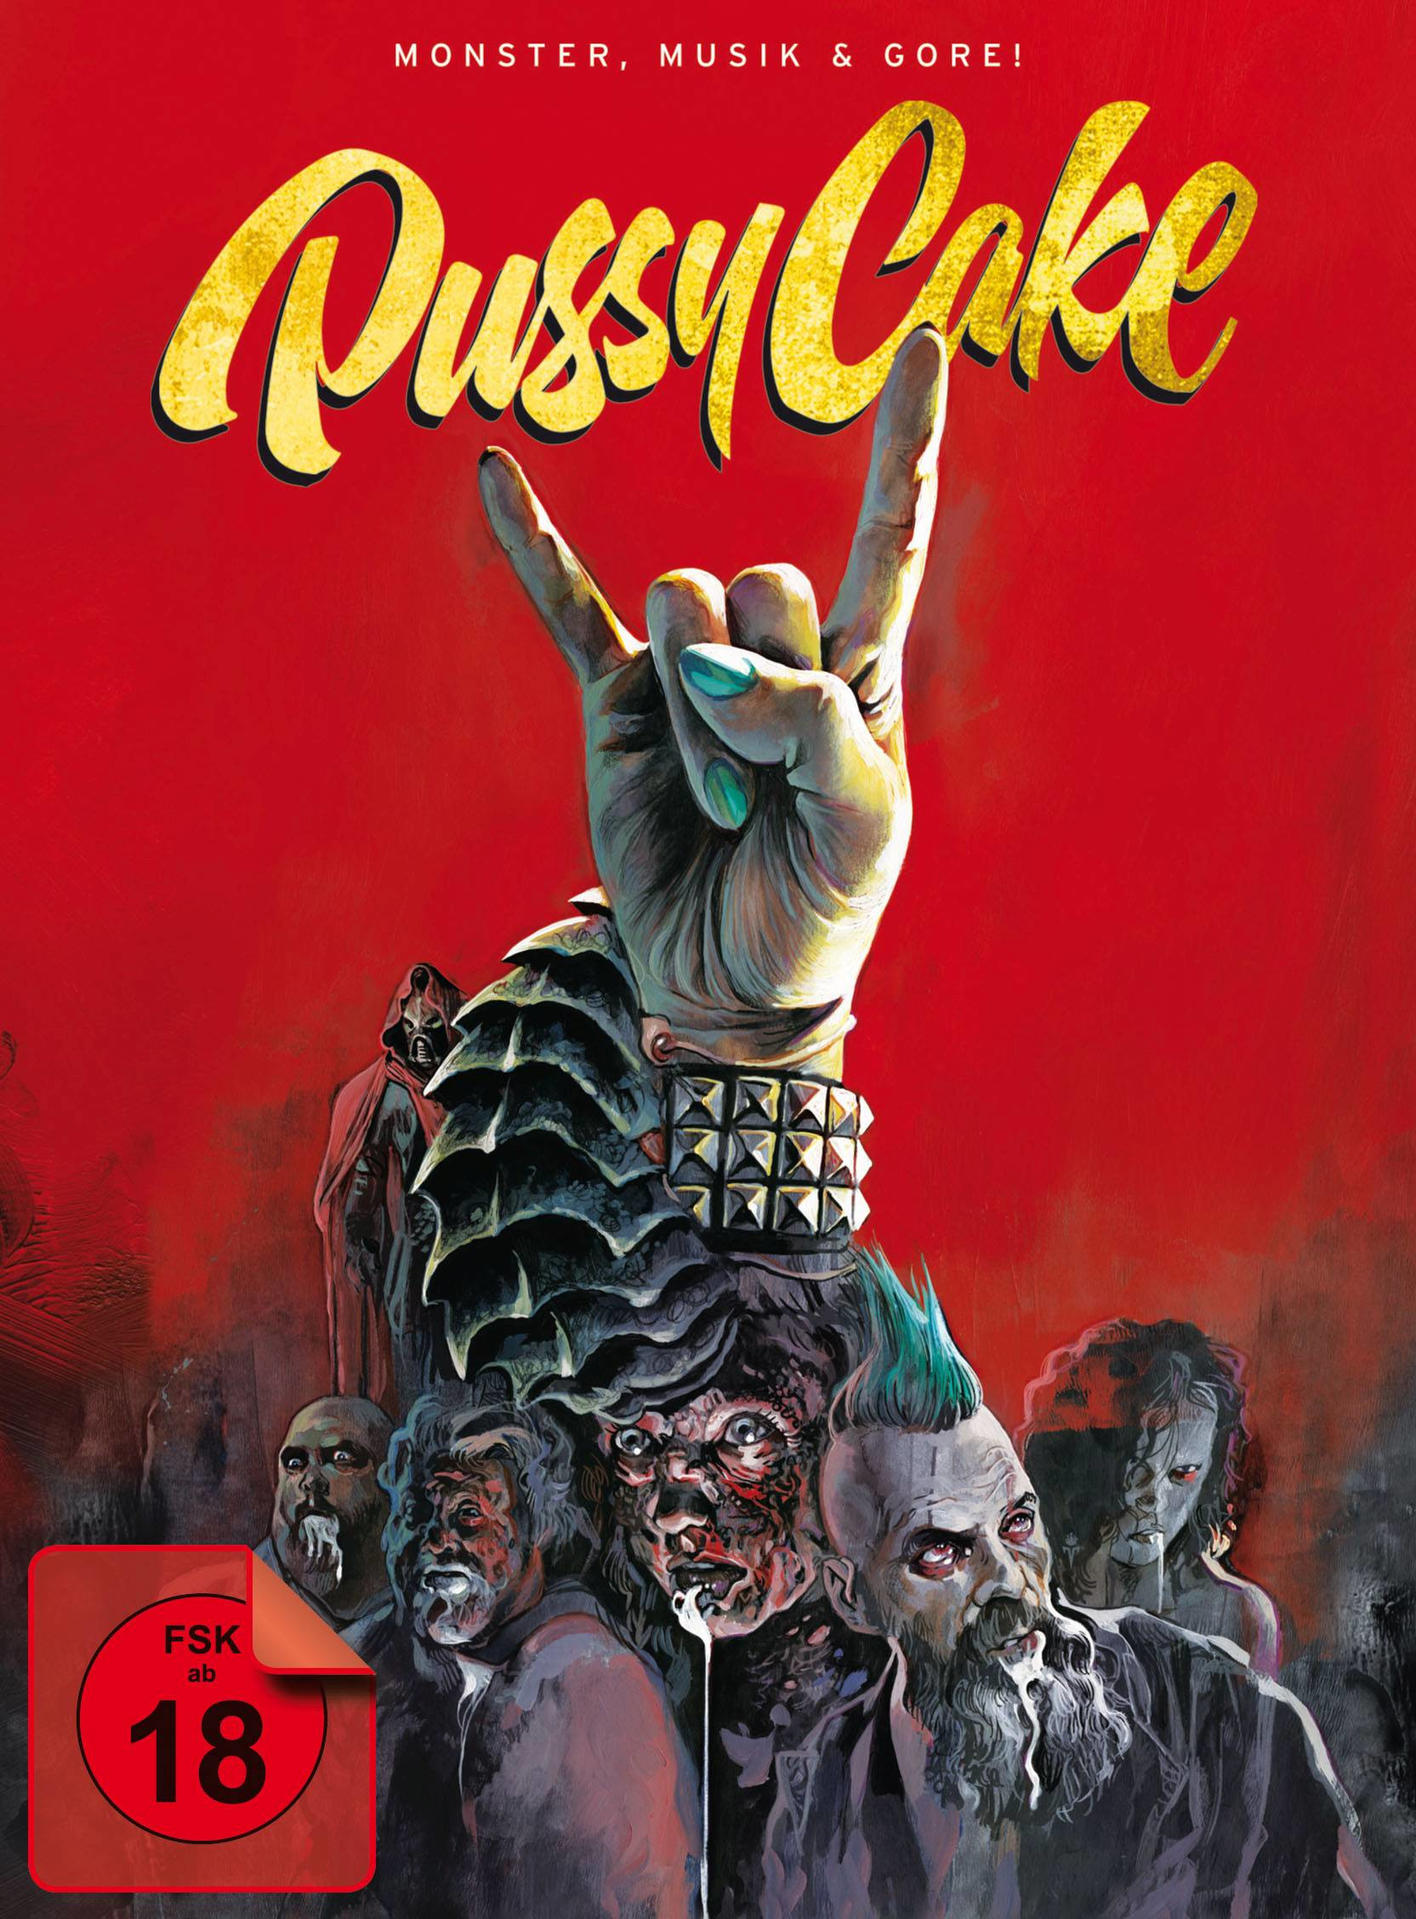 Pussycake-Monster,Musik und Gore! DVD Blu-ray 